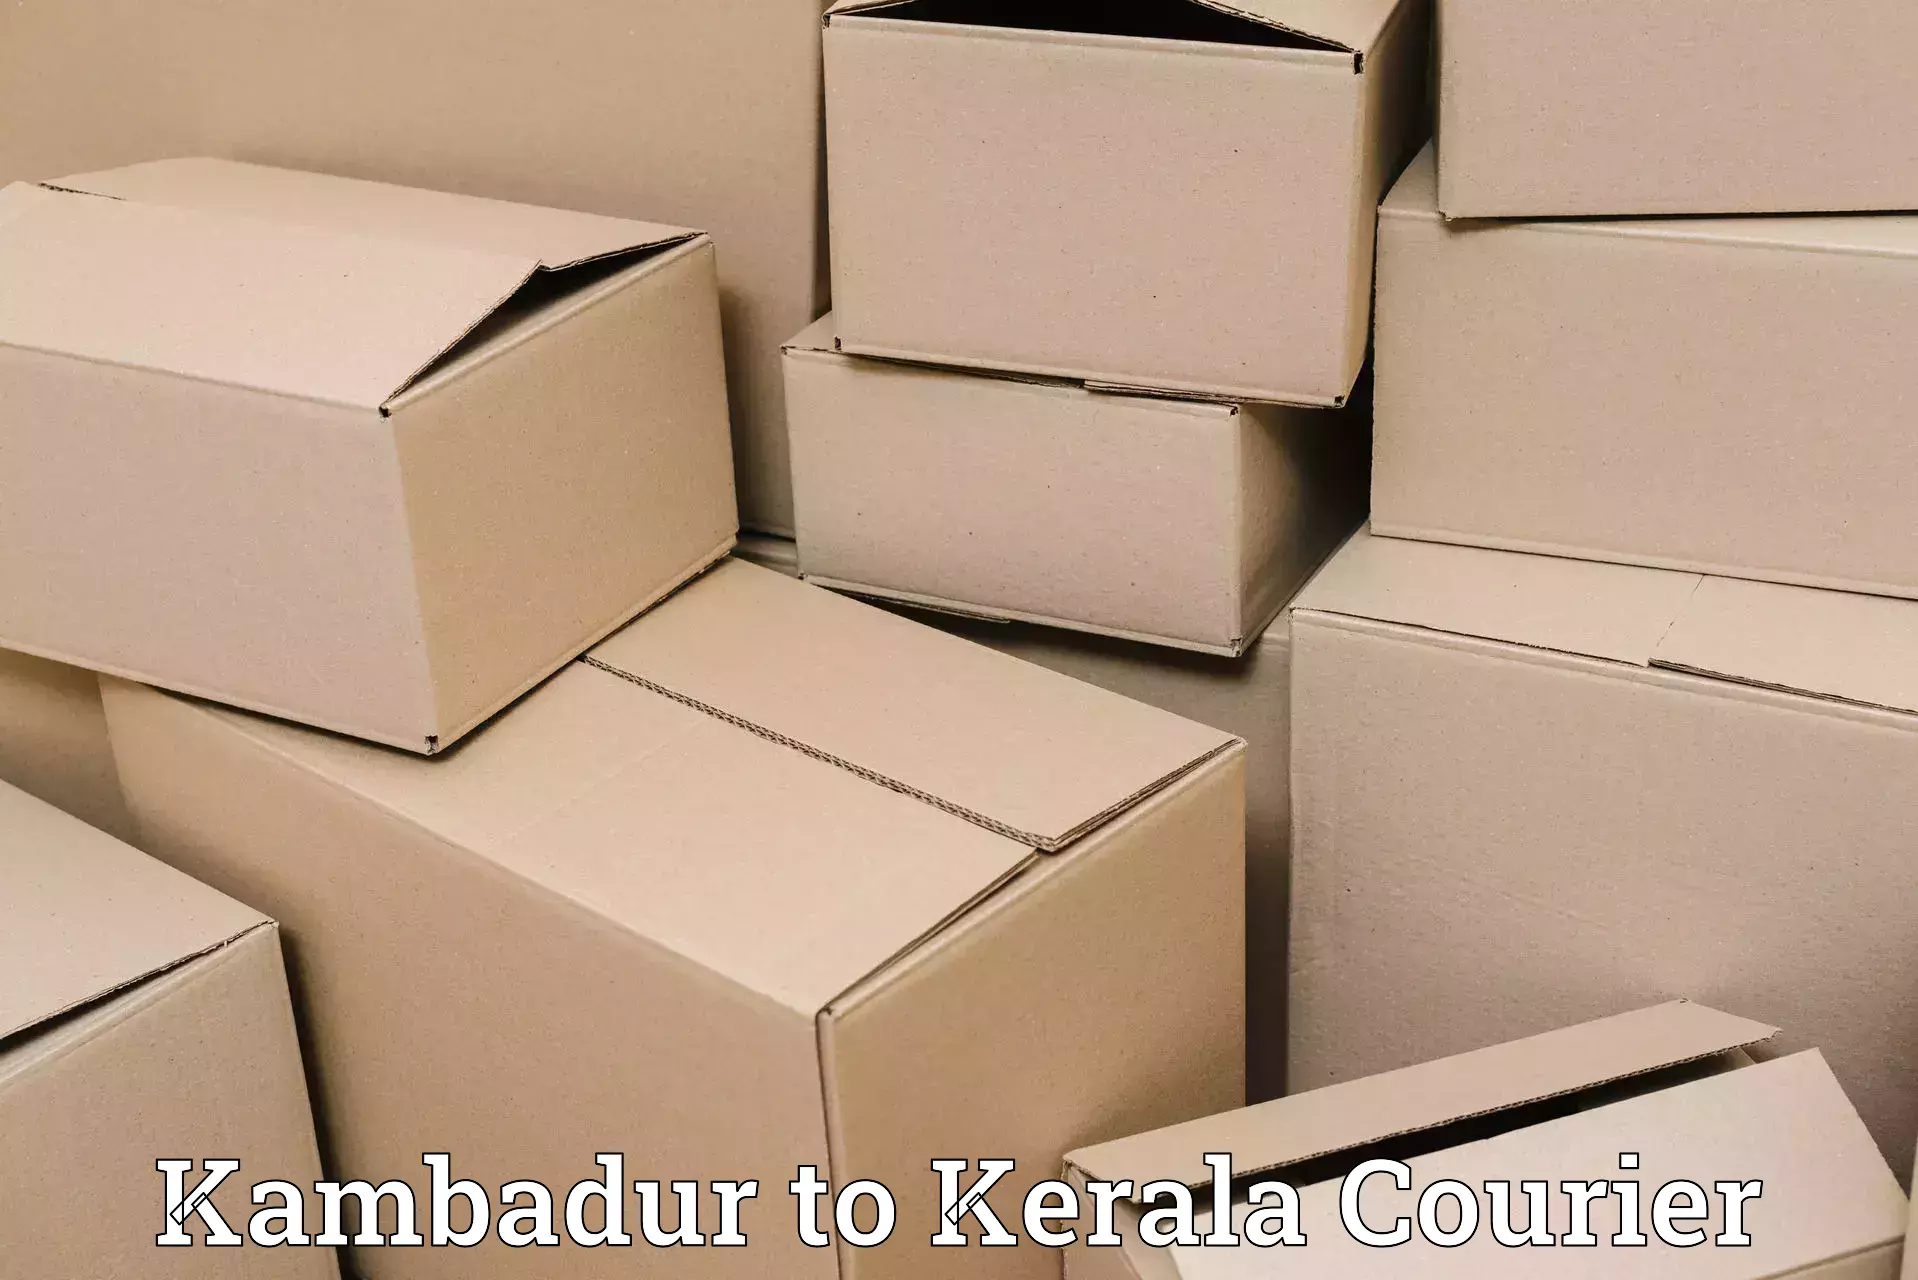 Efficient parcel tracking Kambadur to Adimali